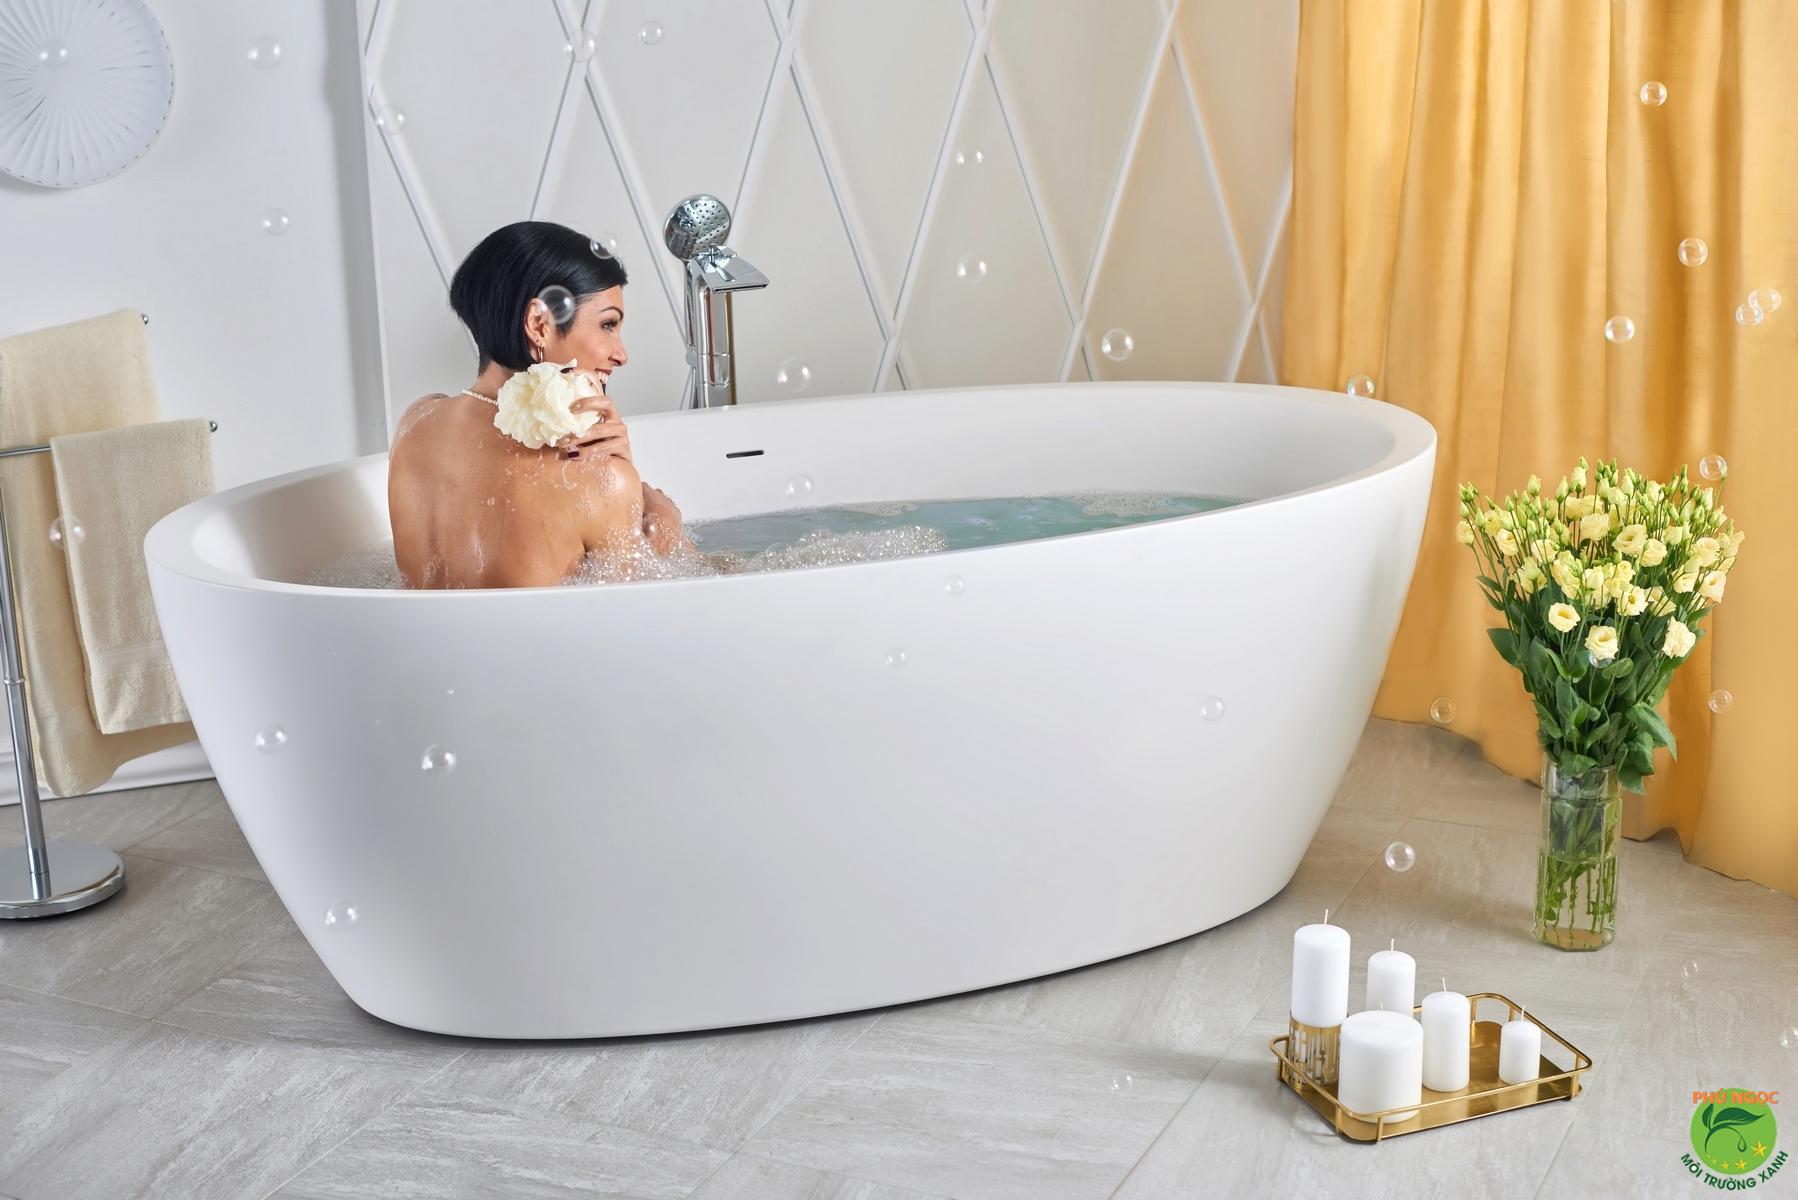 Chọn kích thước bồn tắm phù hợp: Bồn tắm phù hợp với kích thước sẽ giúp bạn tận dụng tối đa không gian phòng tắm mà vẫn đáp ứng được nhu cầu sử dụng. Với nhiều kích thước khác nhau, bạn có thể dễ dàng lựa chọn sản phẩm phù hợp cho gia đình mình.